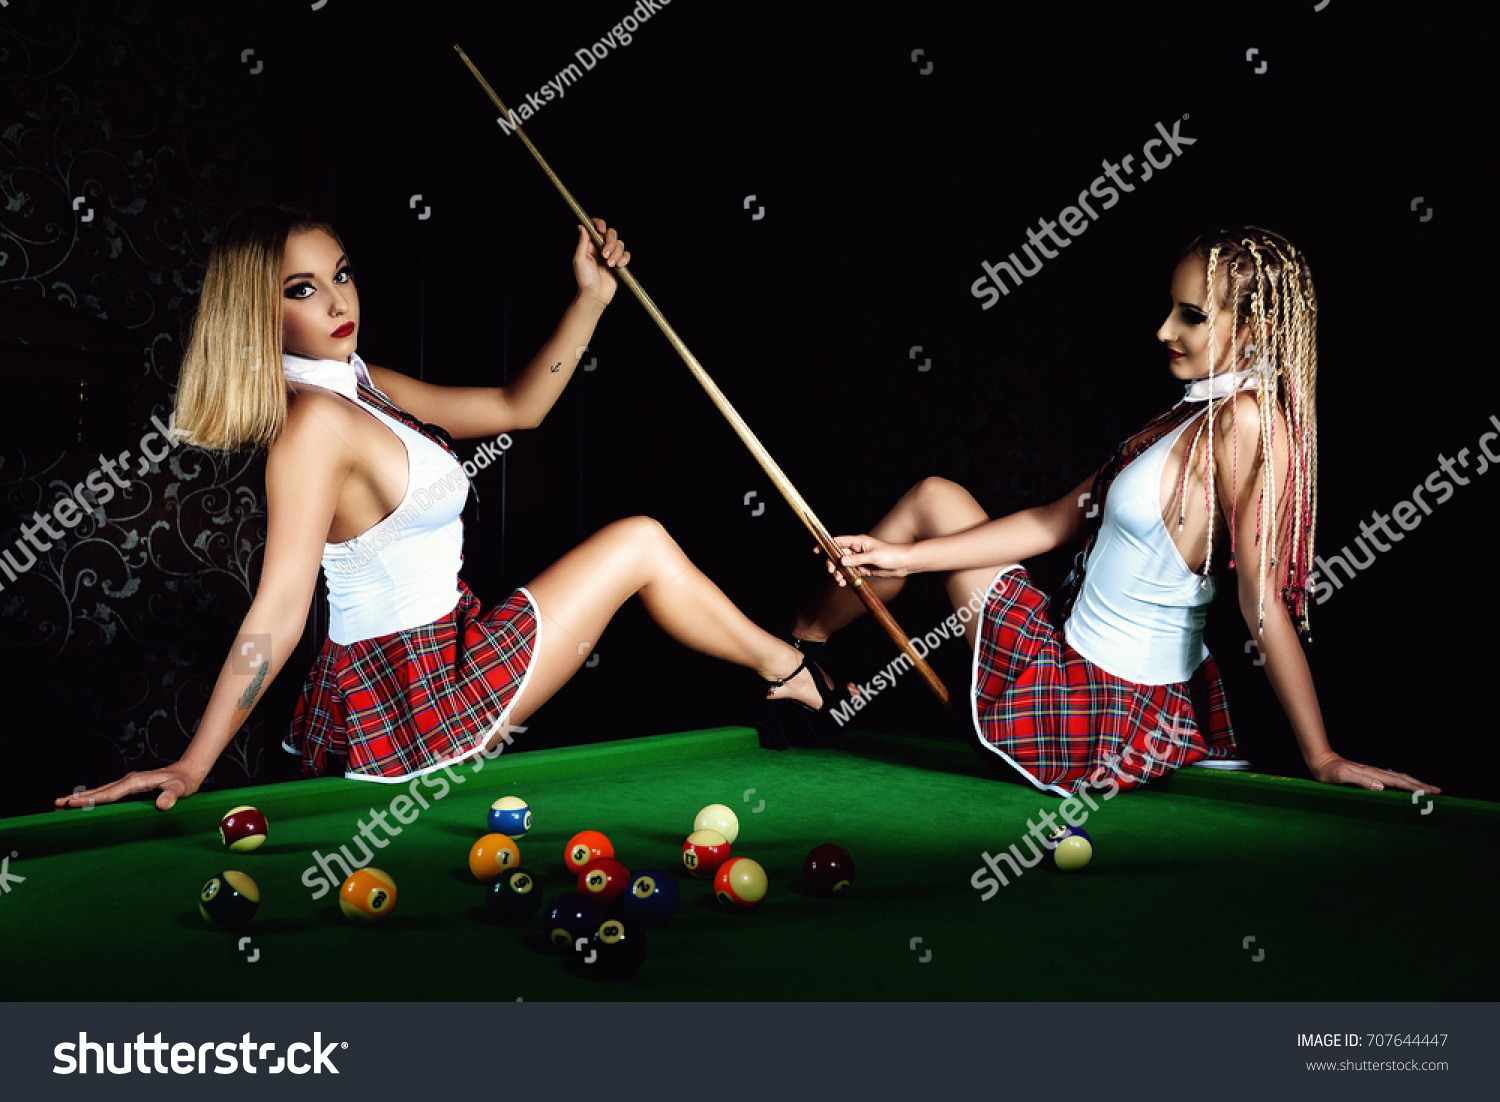 lesbian teens pool table nude gallerie